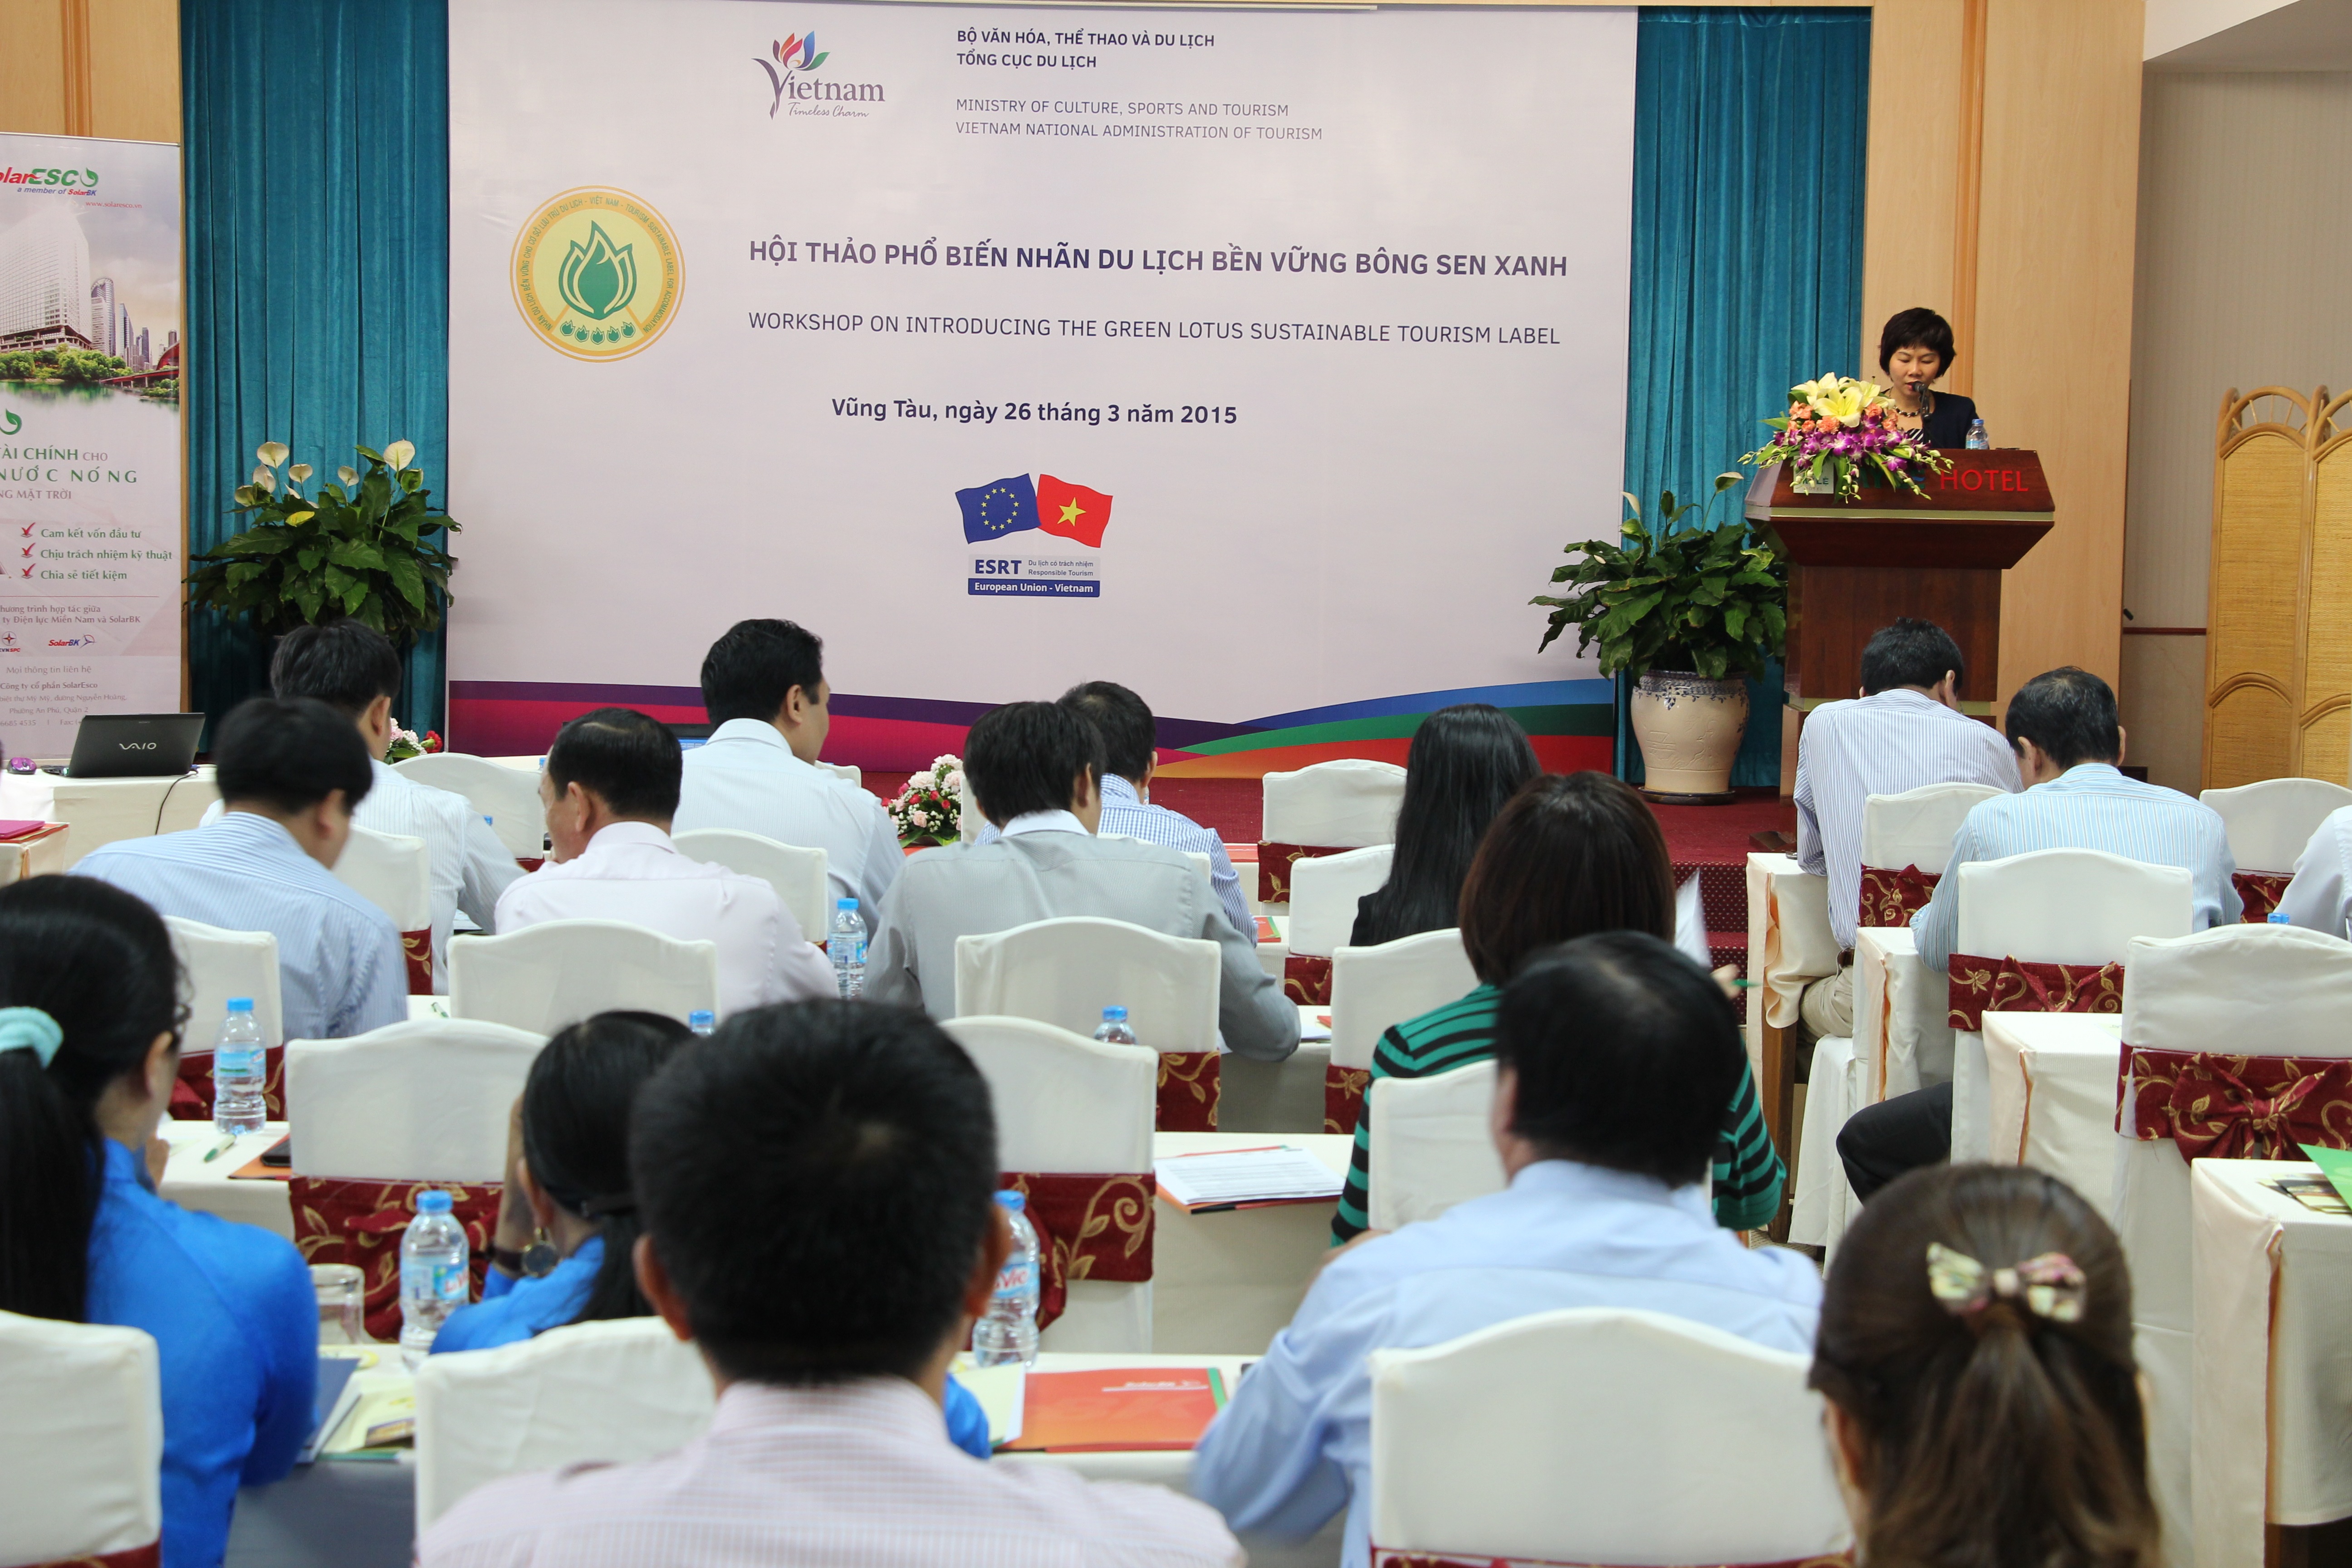 Hội thảo về Nhãn Du lịch bền vững Bông sen xanh tại Vũng Tàu